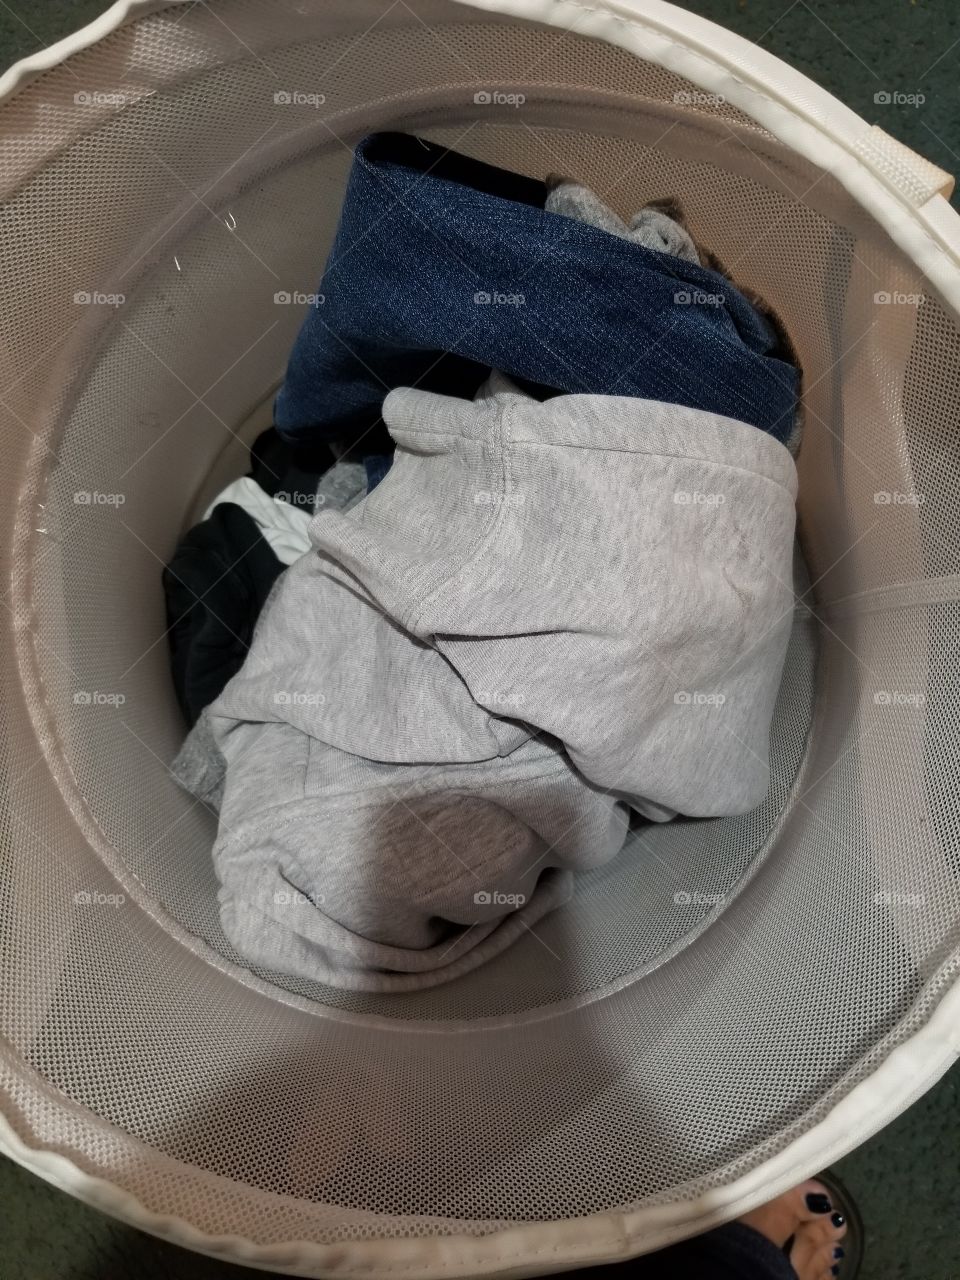 clothes in a hamper